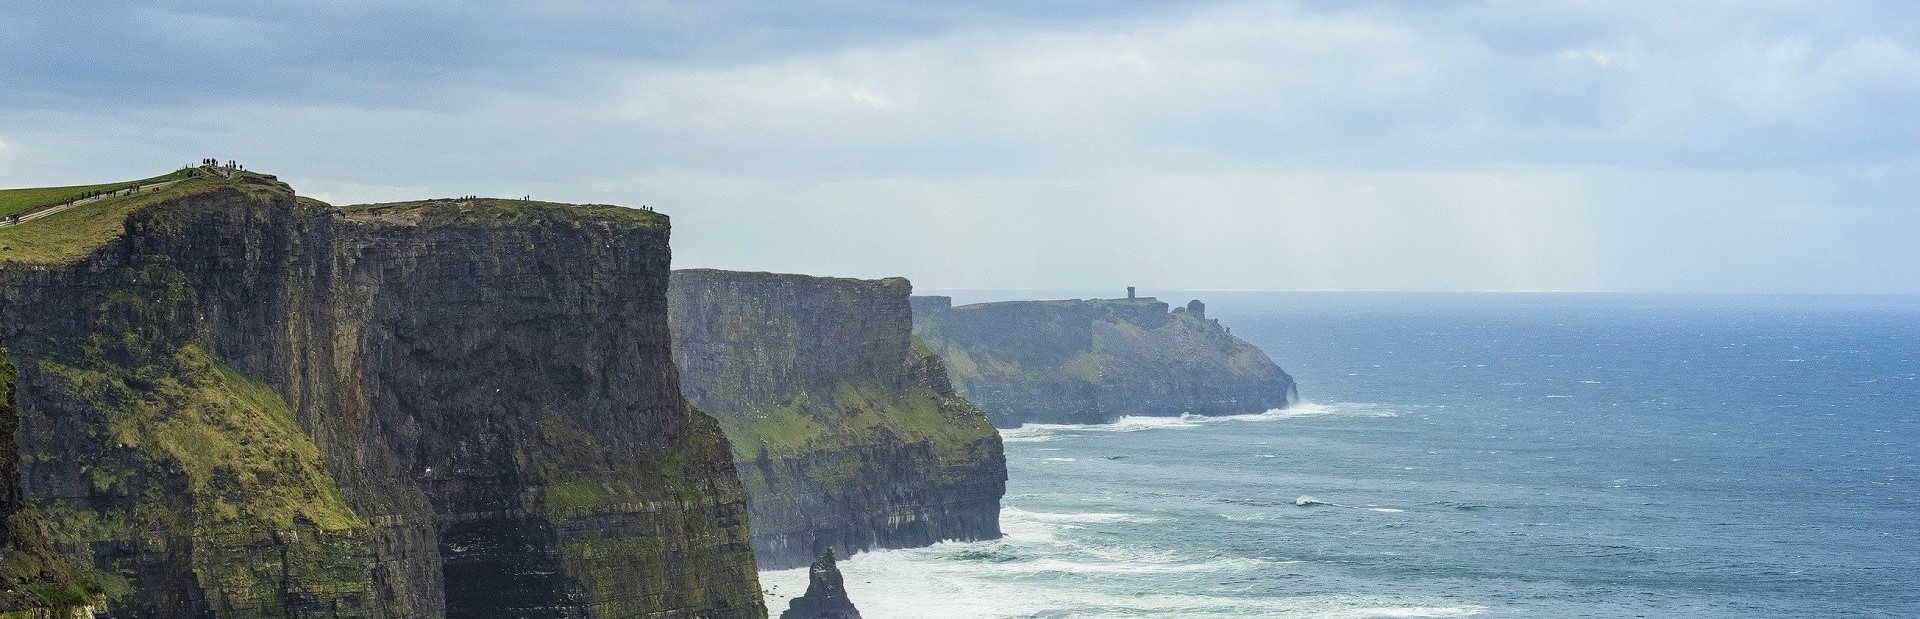 Ireland Cliffs_of_Moher_-_Unsplash 2